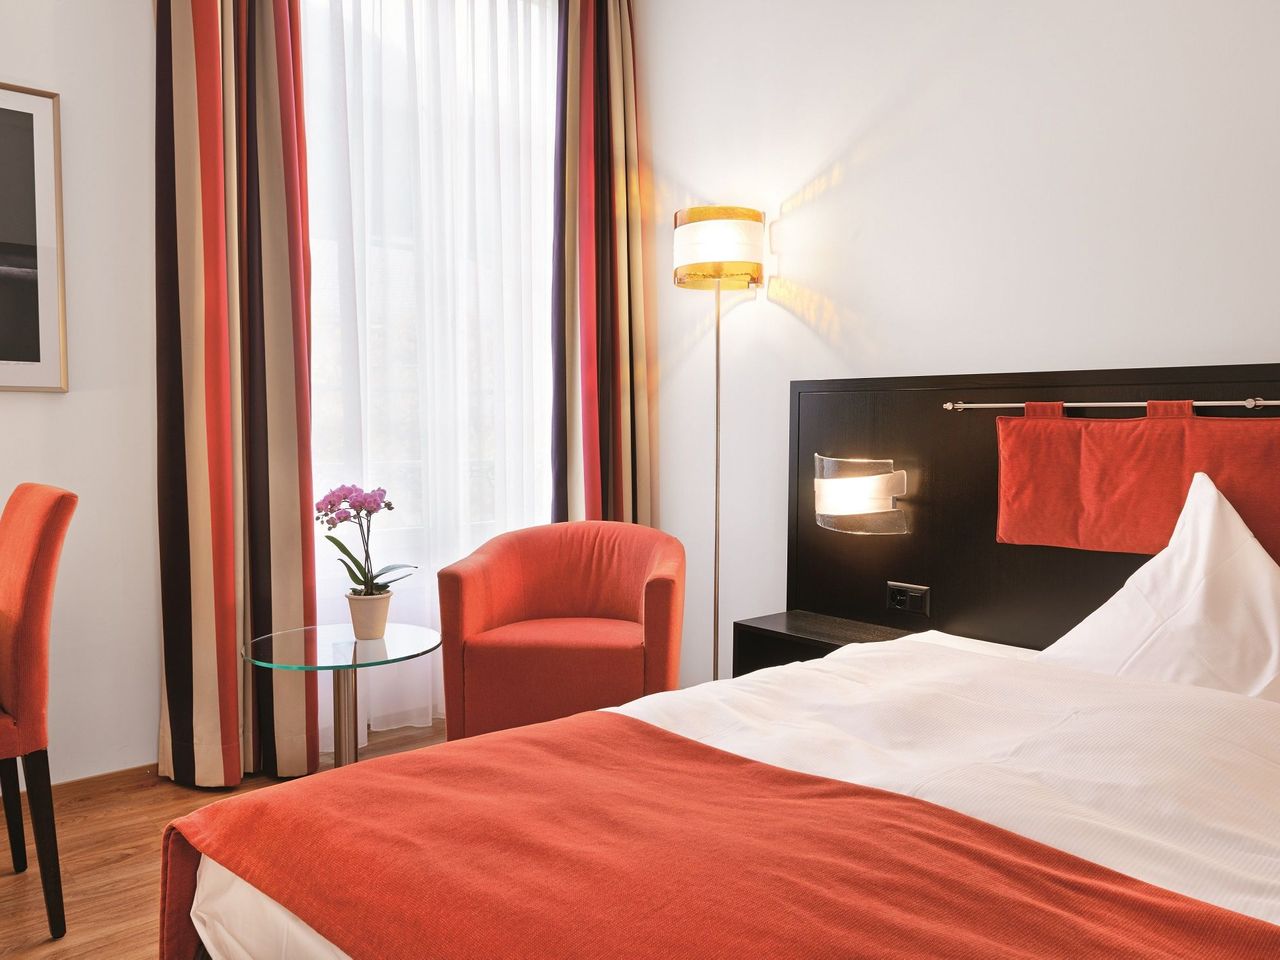 7 Tage Schweiz entdecken im Sorell Hotel Tamina